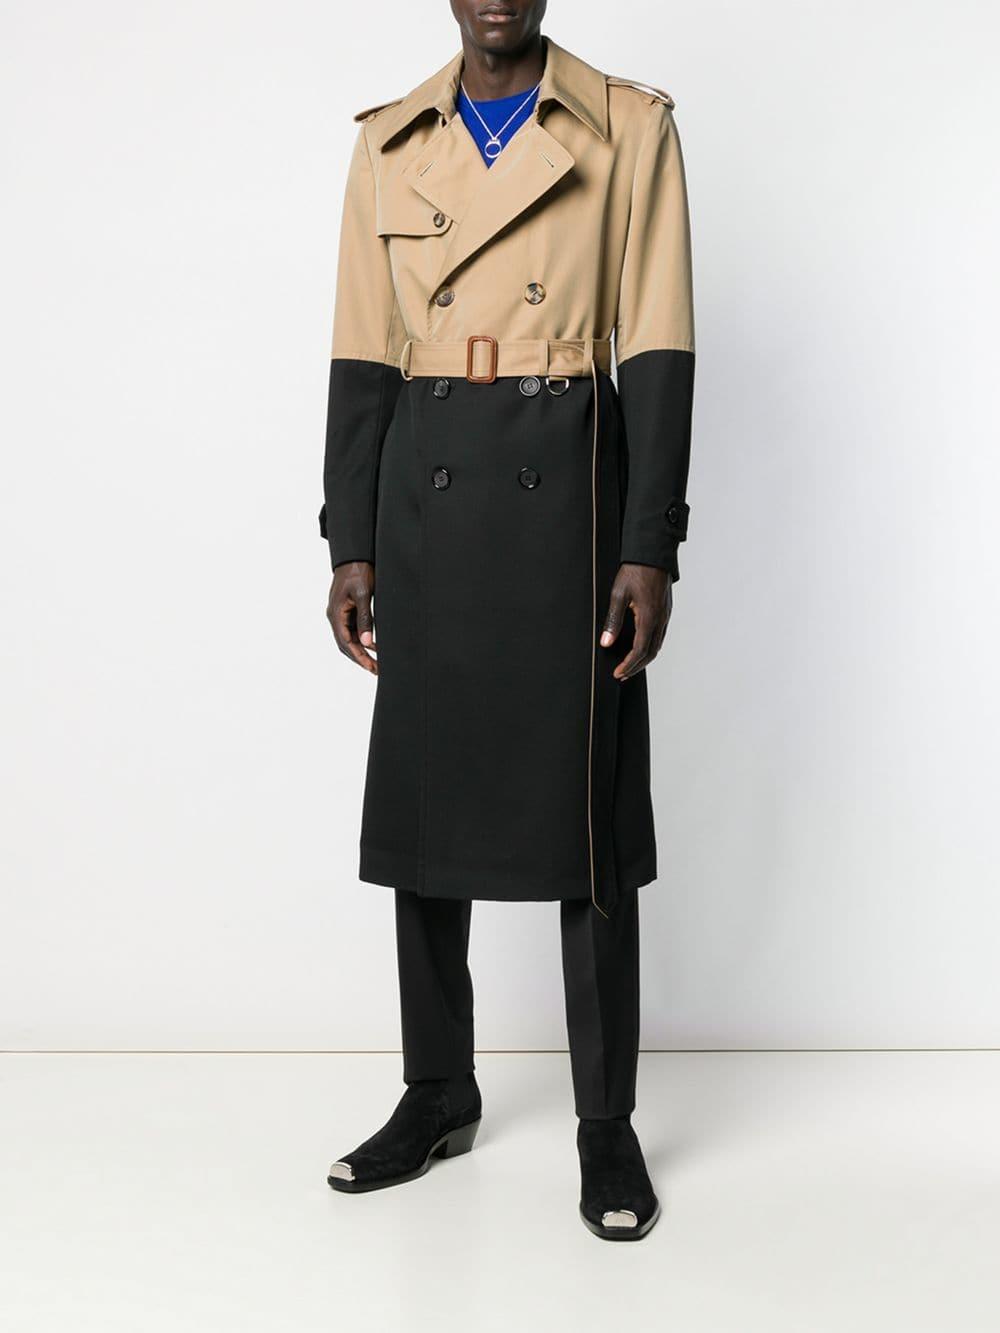 Alexander McQueen Colourblock Trench Coat in Brown for Men - Lyst